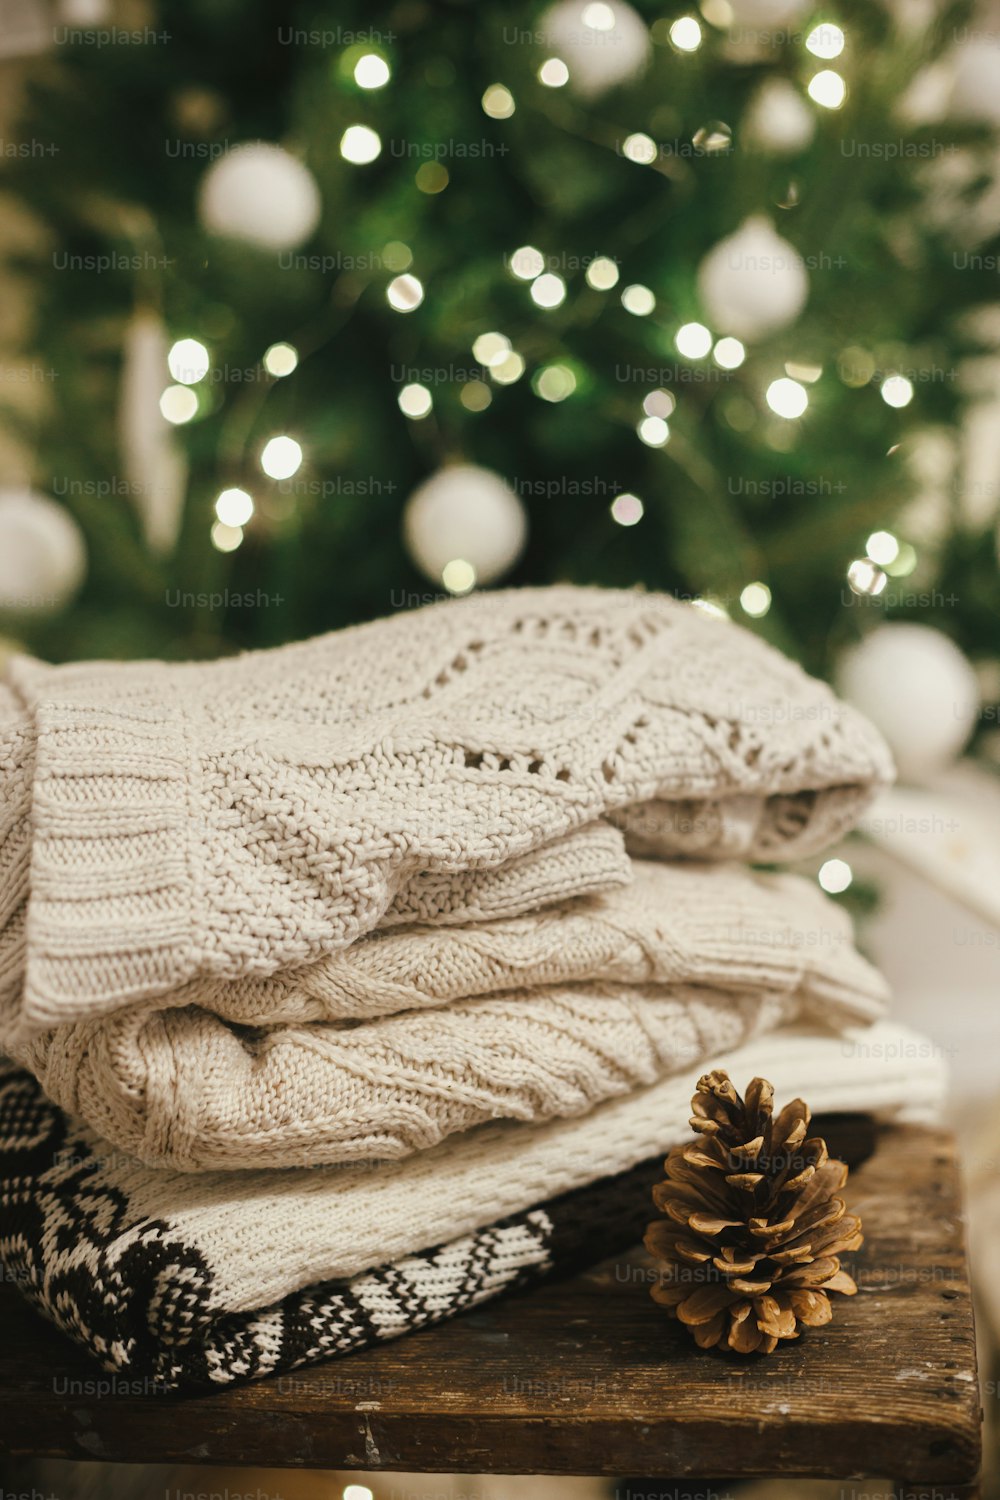 조명과 흰색 별의 크리스마스 트리 배경에 솔방울이 있는 소박한 나무에 아늑한 니트 스웨터. 축제 장식 스칸디나비아 방에 세련된 스웨터 더미. 겨울 방학